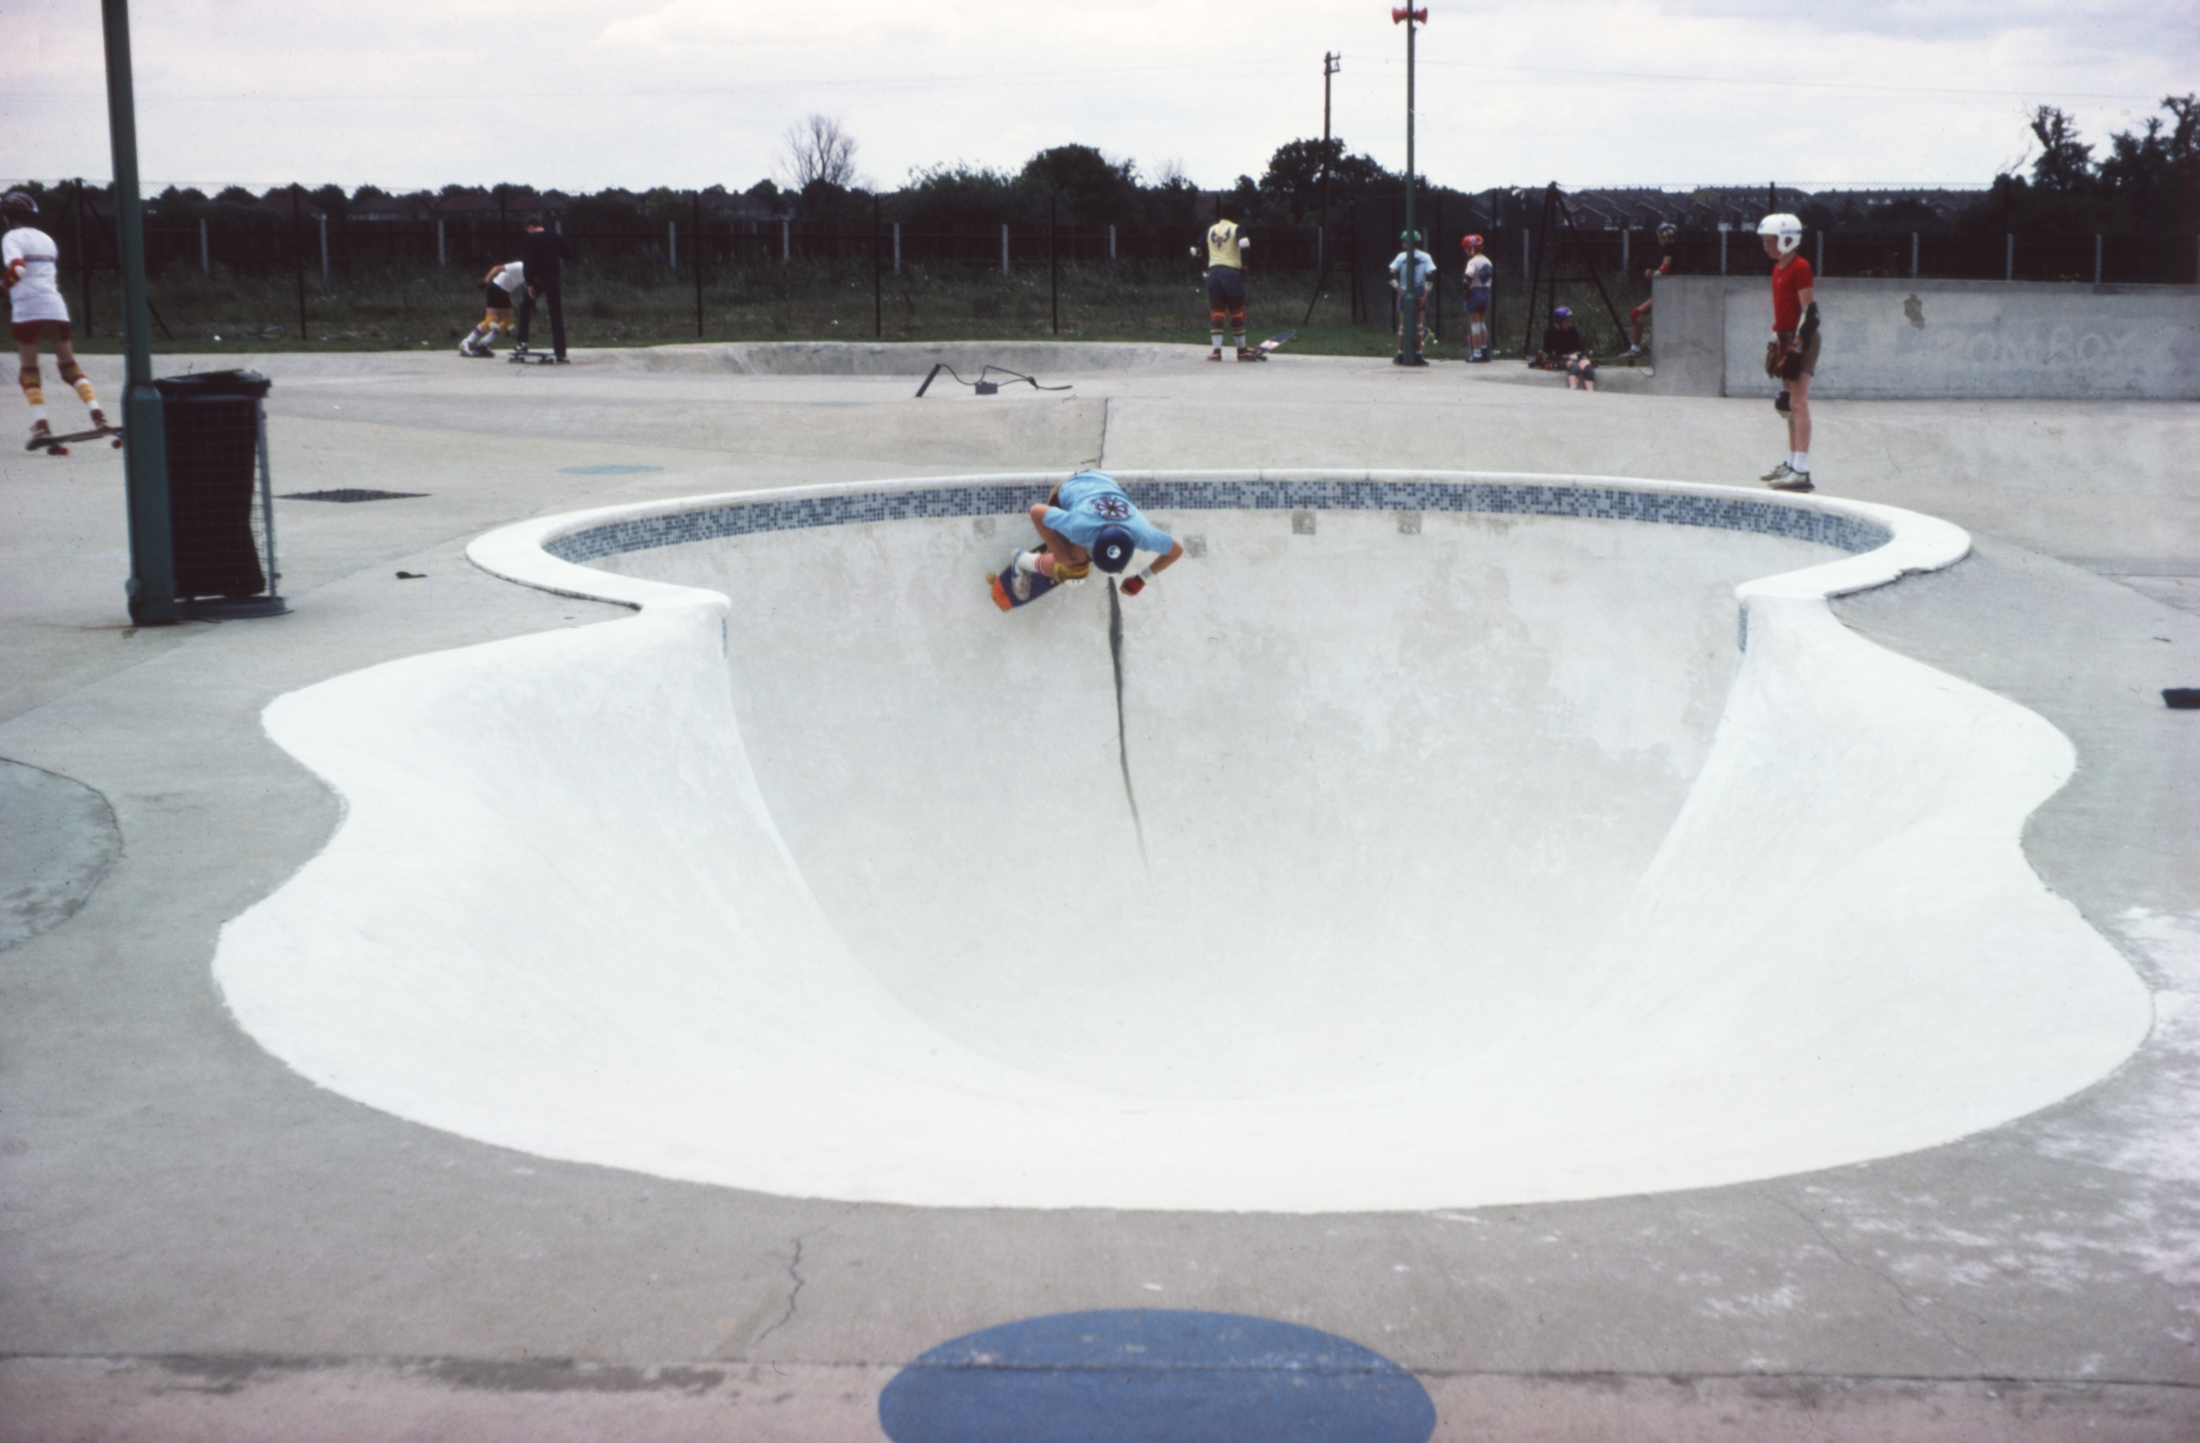 Iain Borden, 1980. Rom skatepark. Copyright the artist